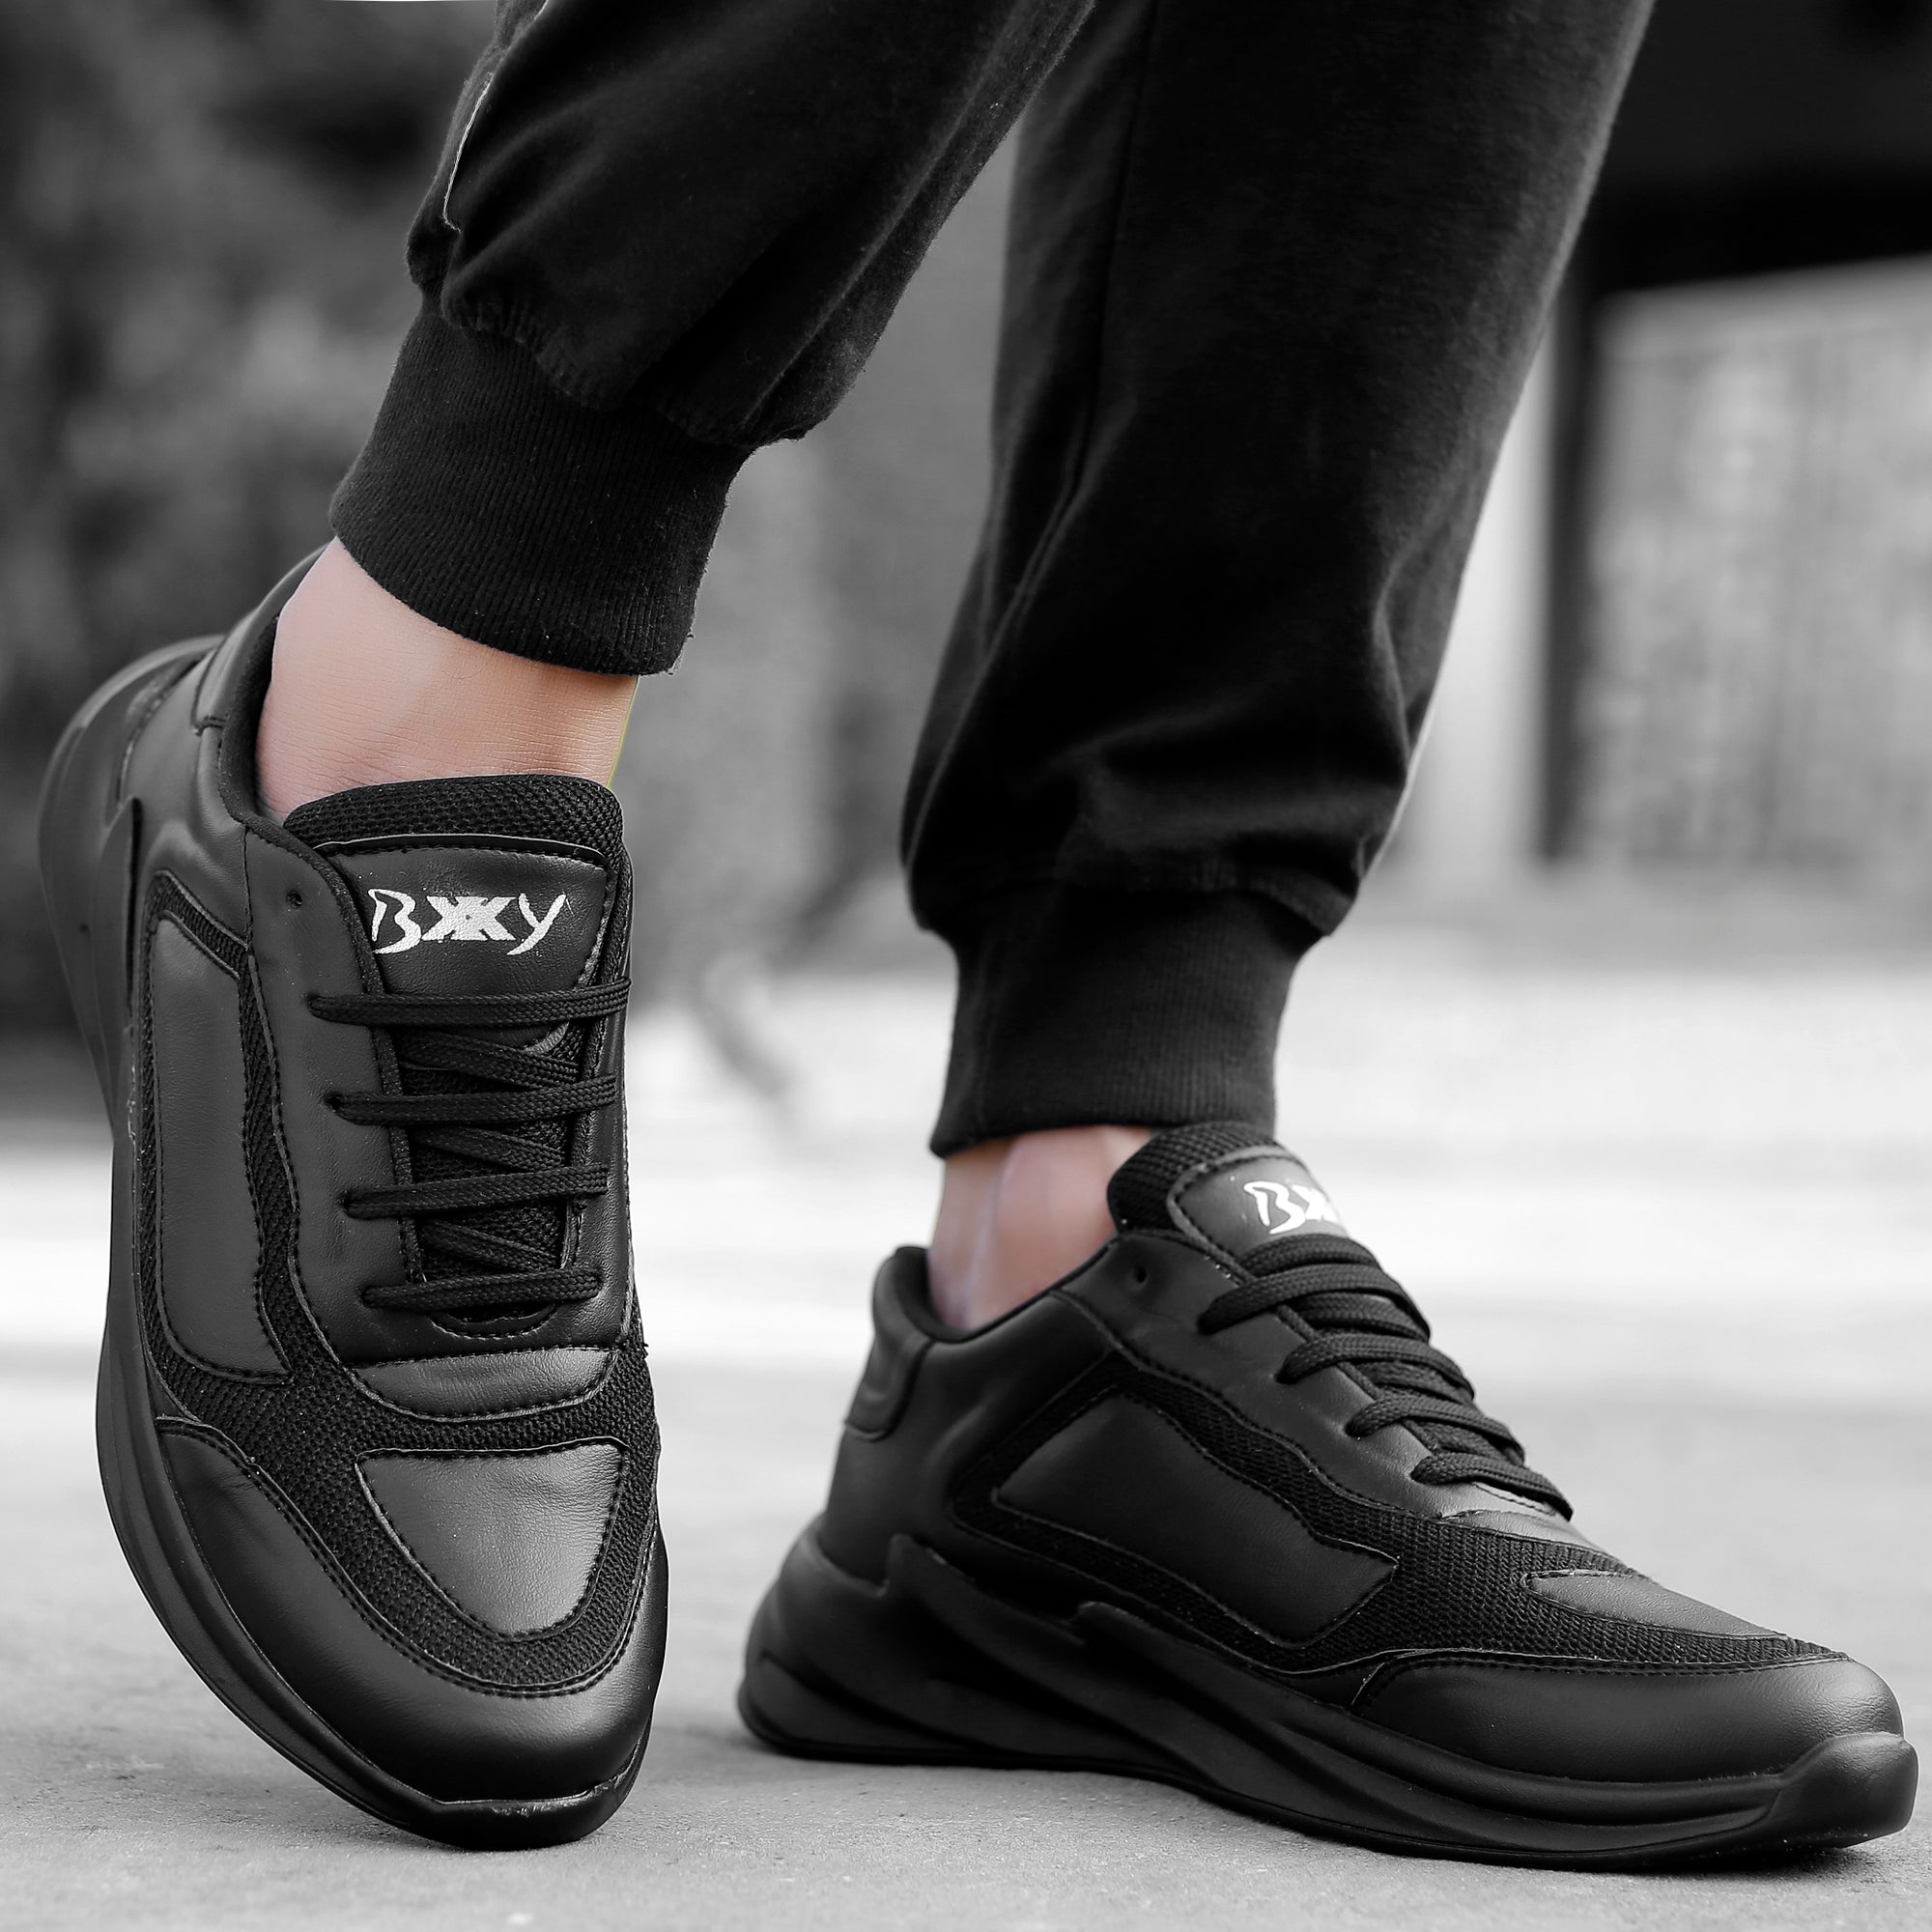 Men Heel Shoes Increasing Height Sneakers Sport Athletics Wedge Trainers |  eBay